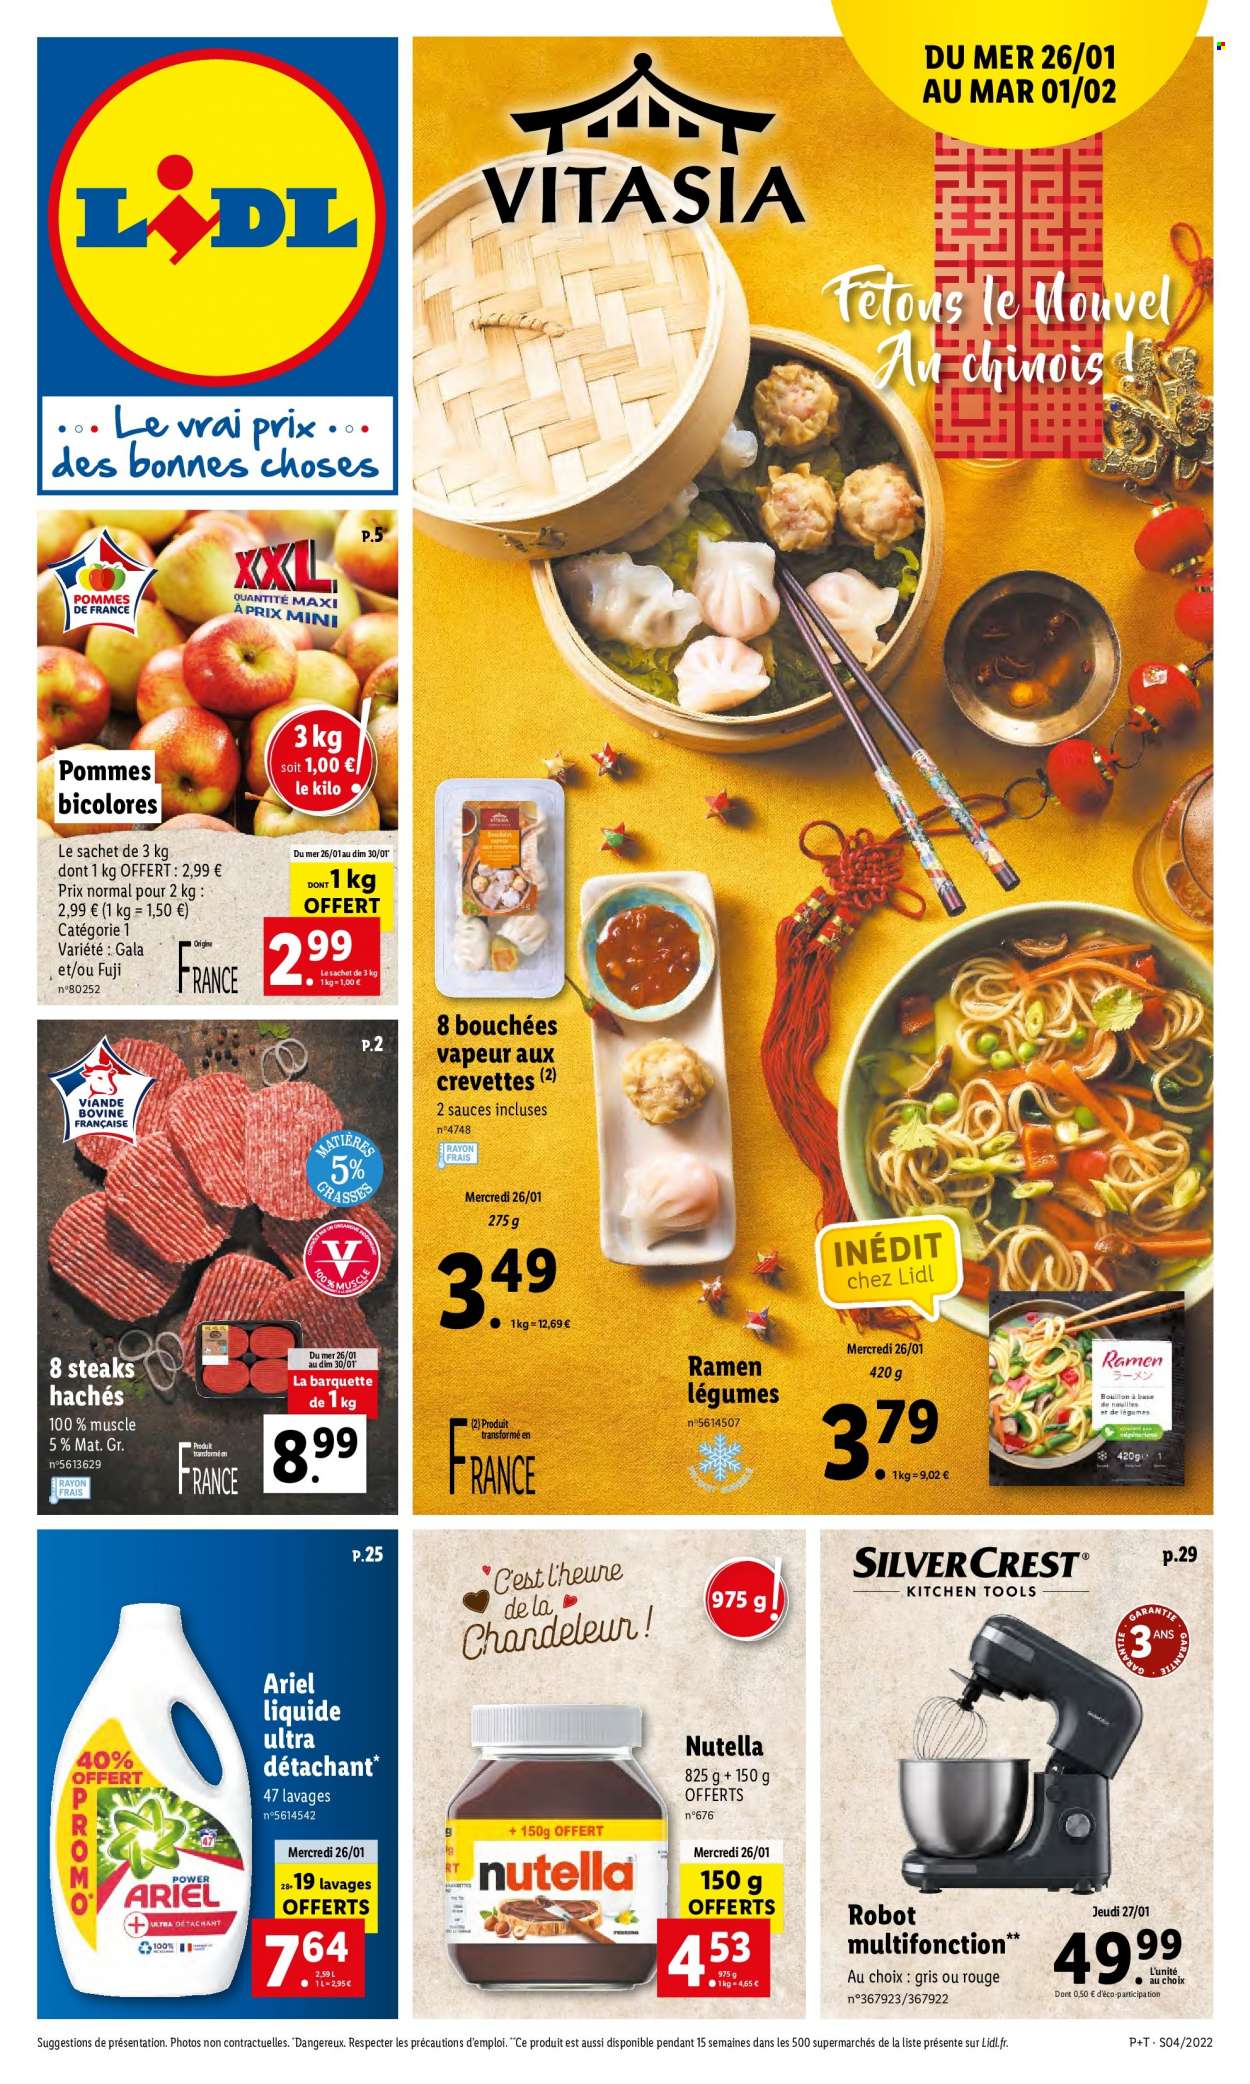 thumbnail - Catalogue Lidl - 26/01/2022 - 01/02/2022 - Produits soldés - bouchées, steak haché, viande hachée, Nutella, Ariel. Page 1.